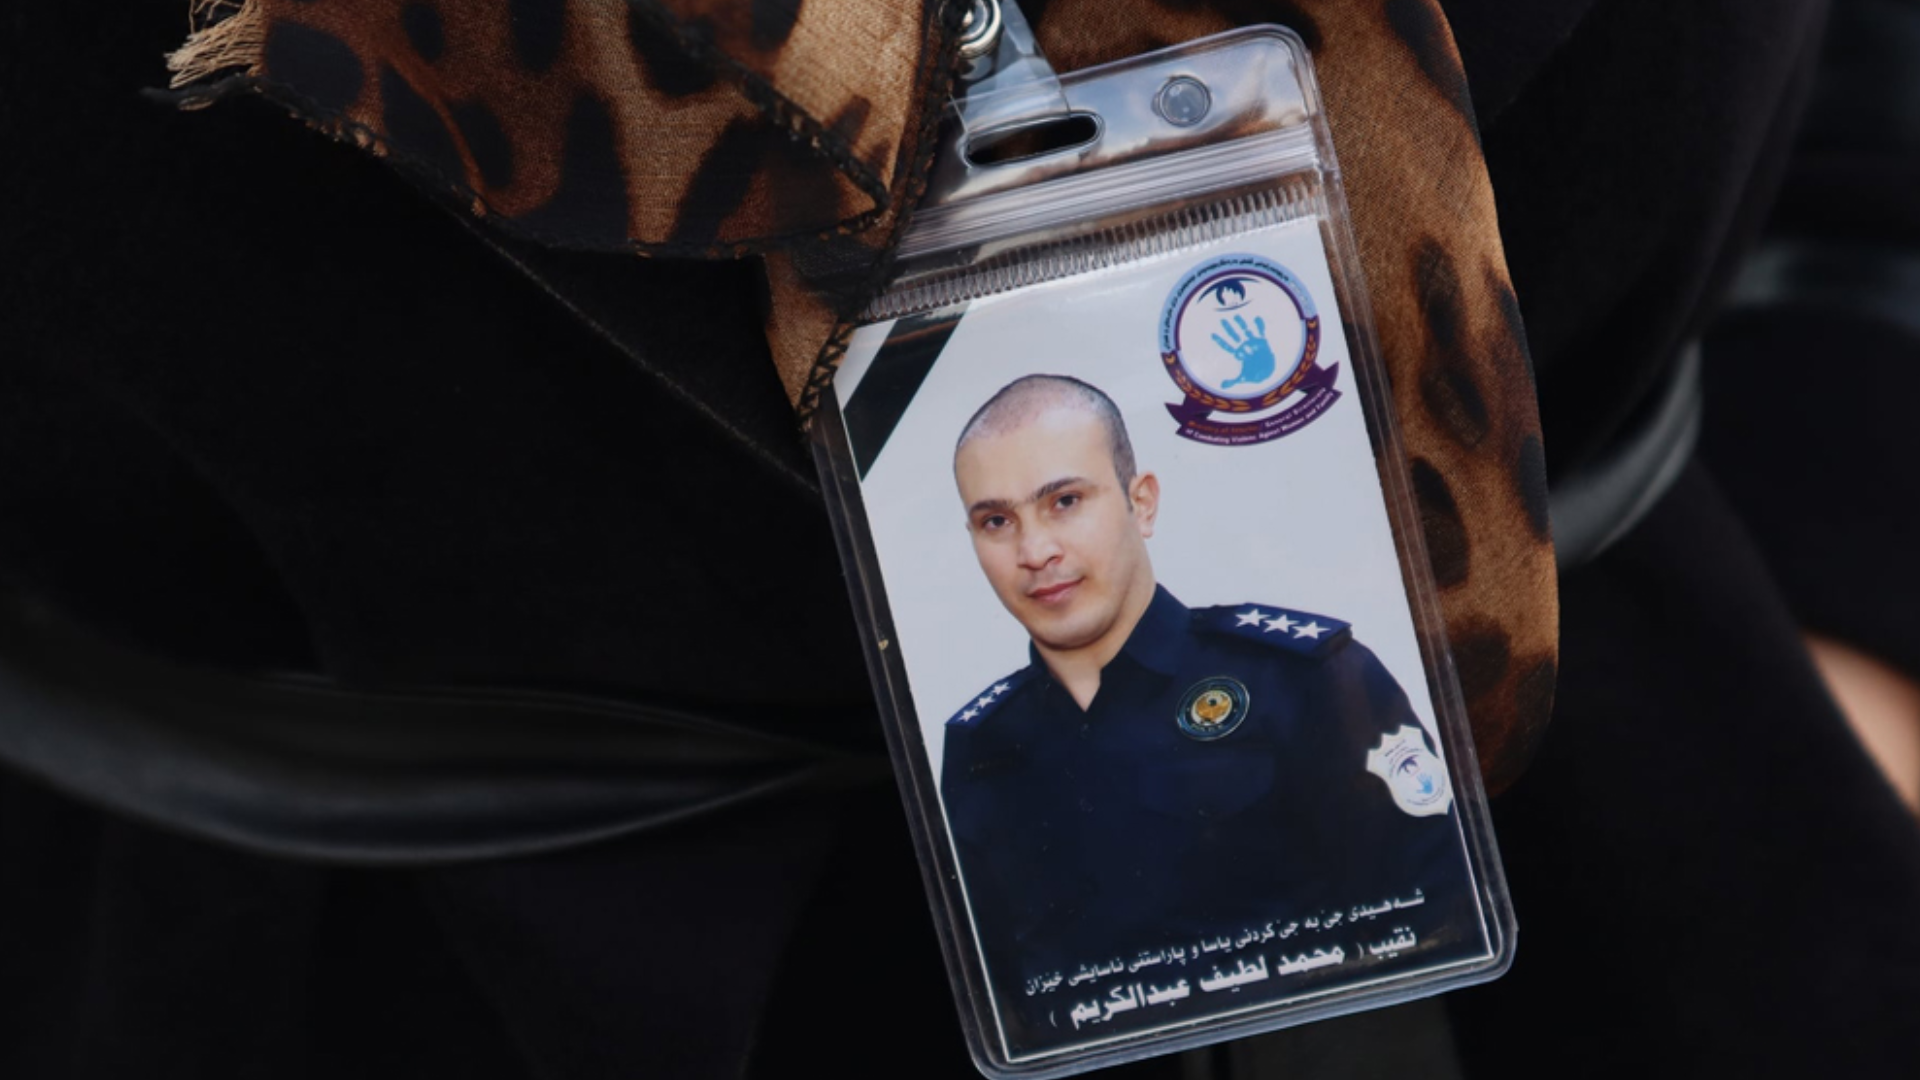 Martyr Lieutenant Mohammed Latif 